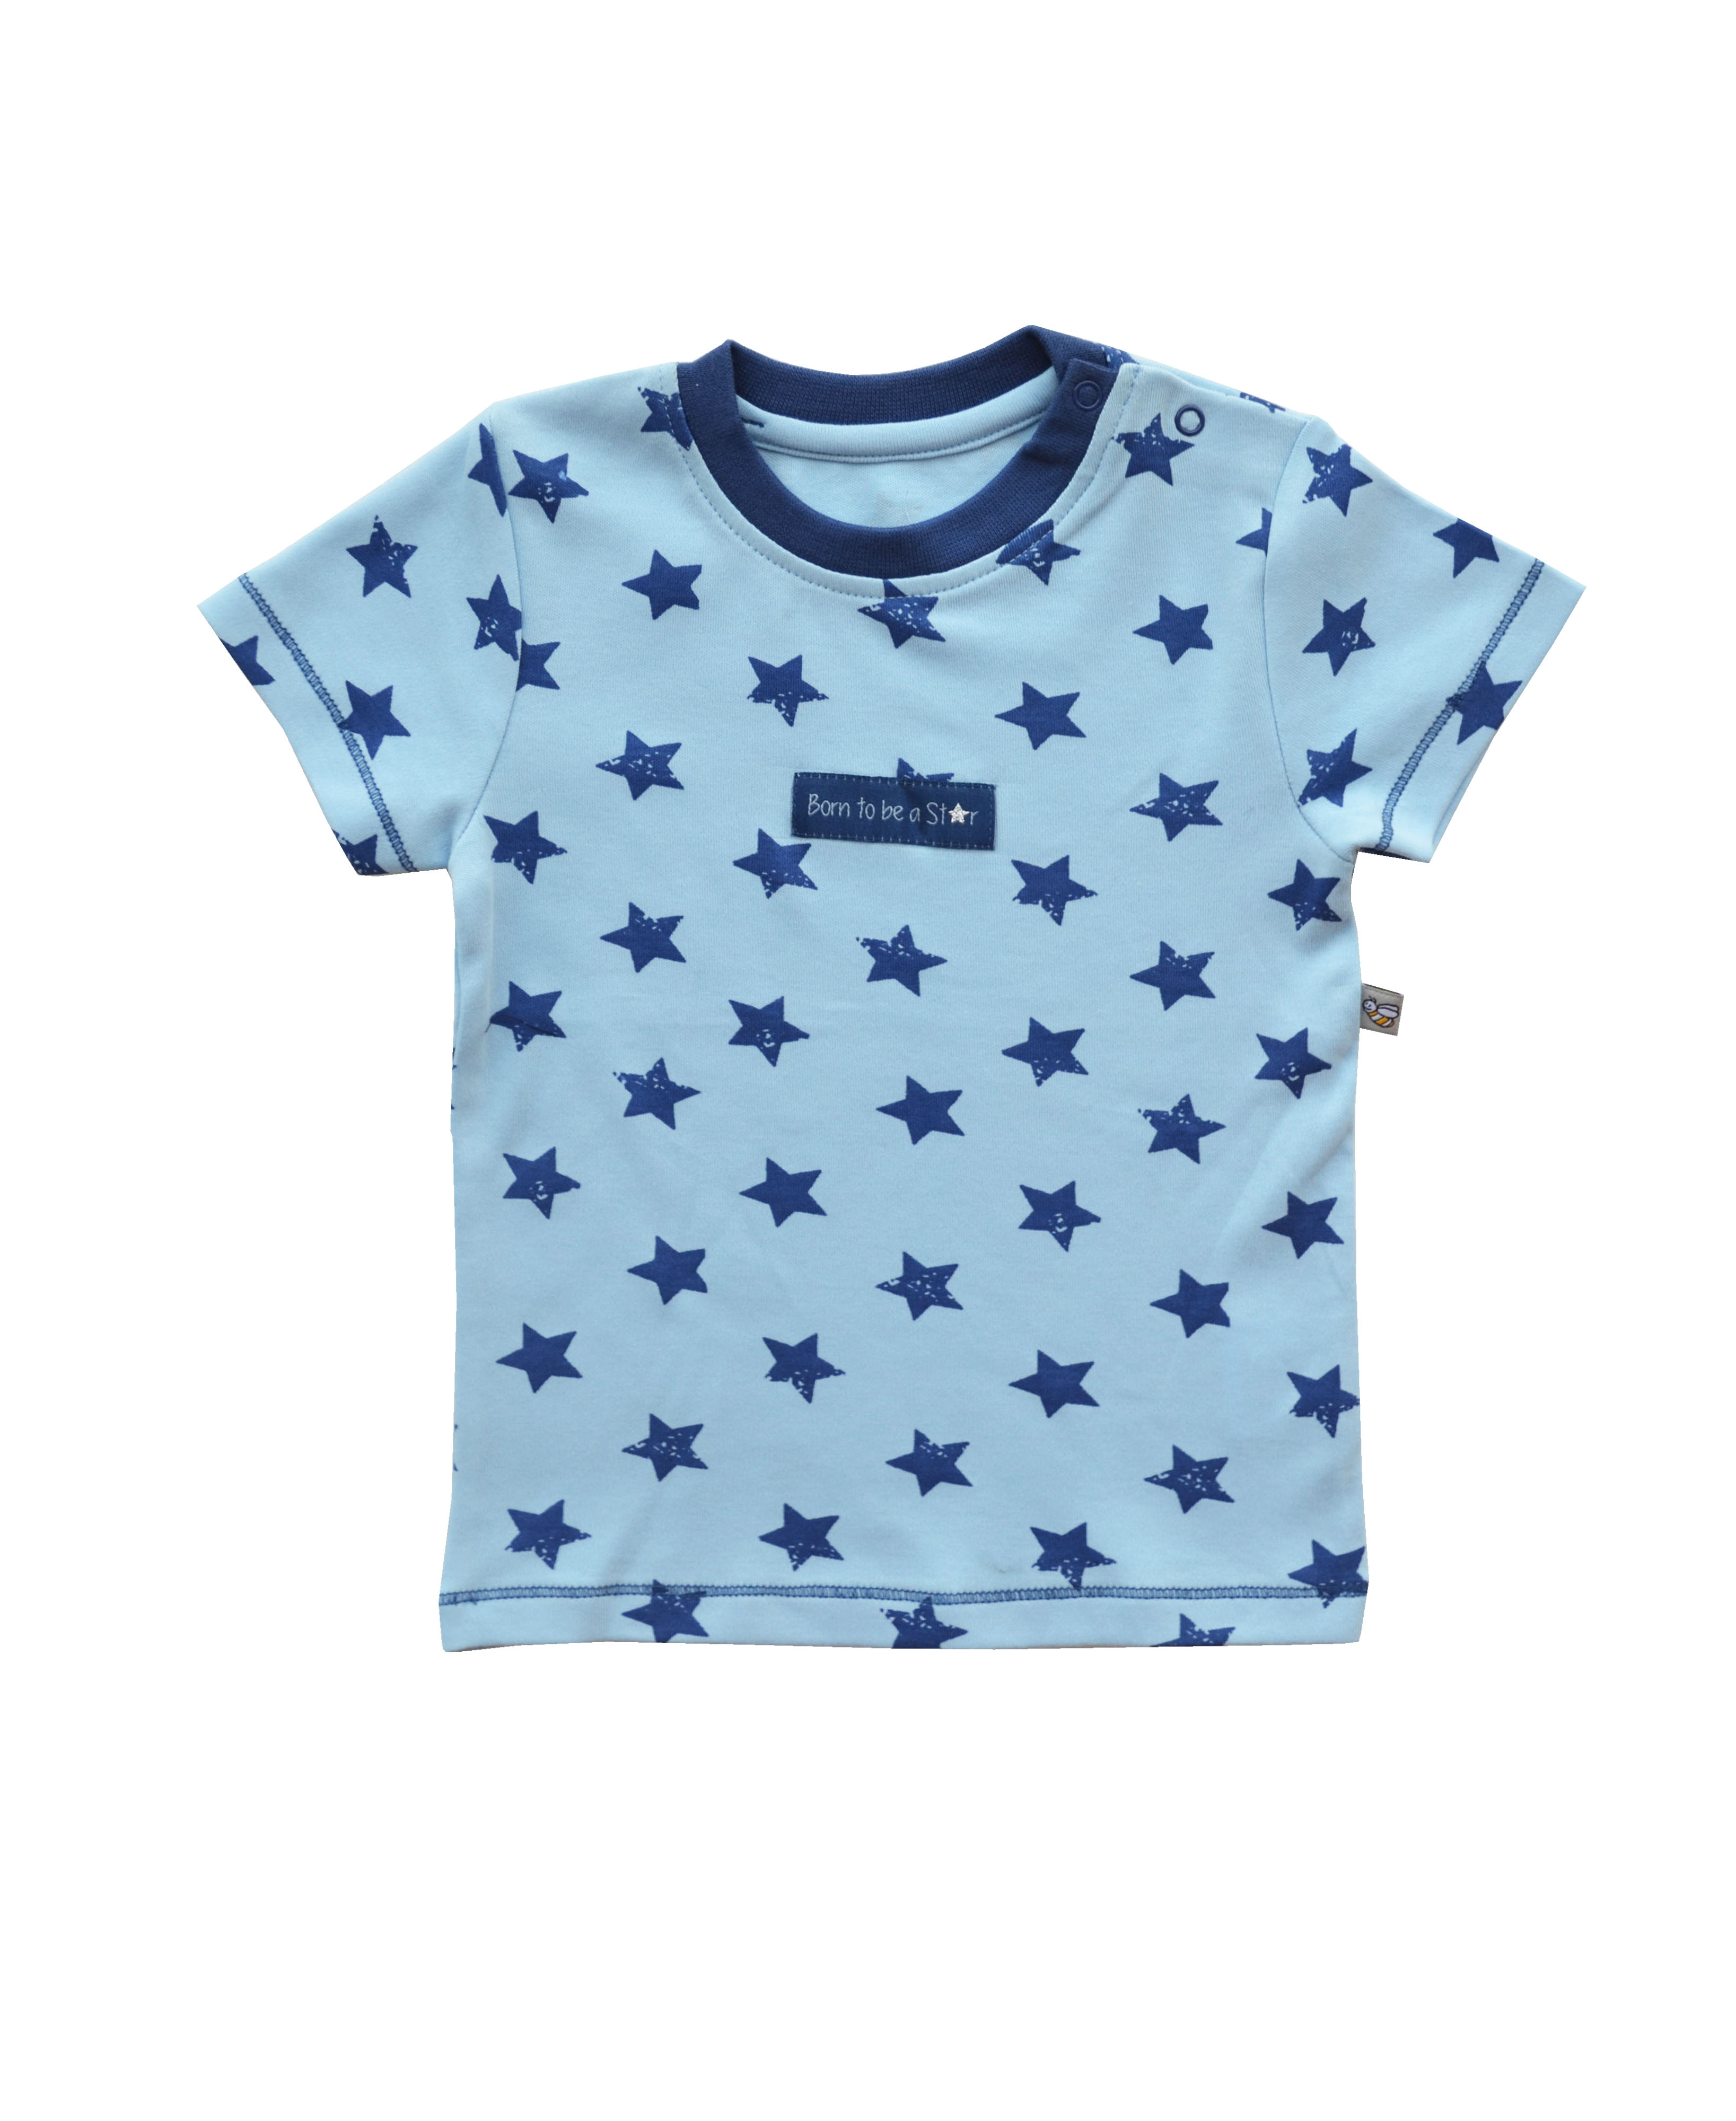 Babeez | Blue T-Shirt with Star Print (100% Cotton Interlock Biowash) undefined